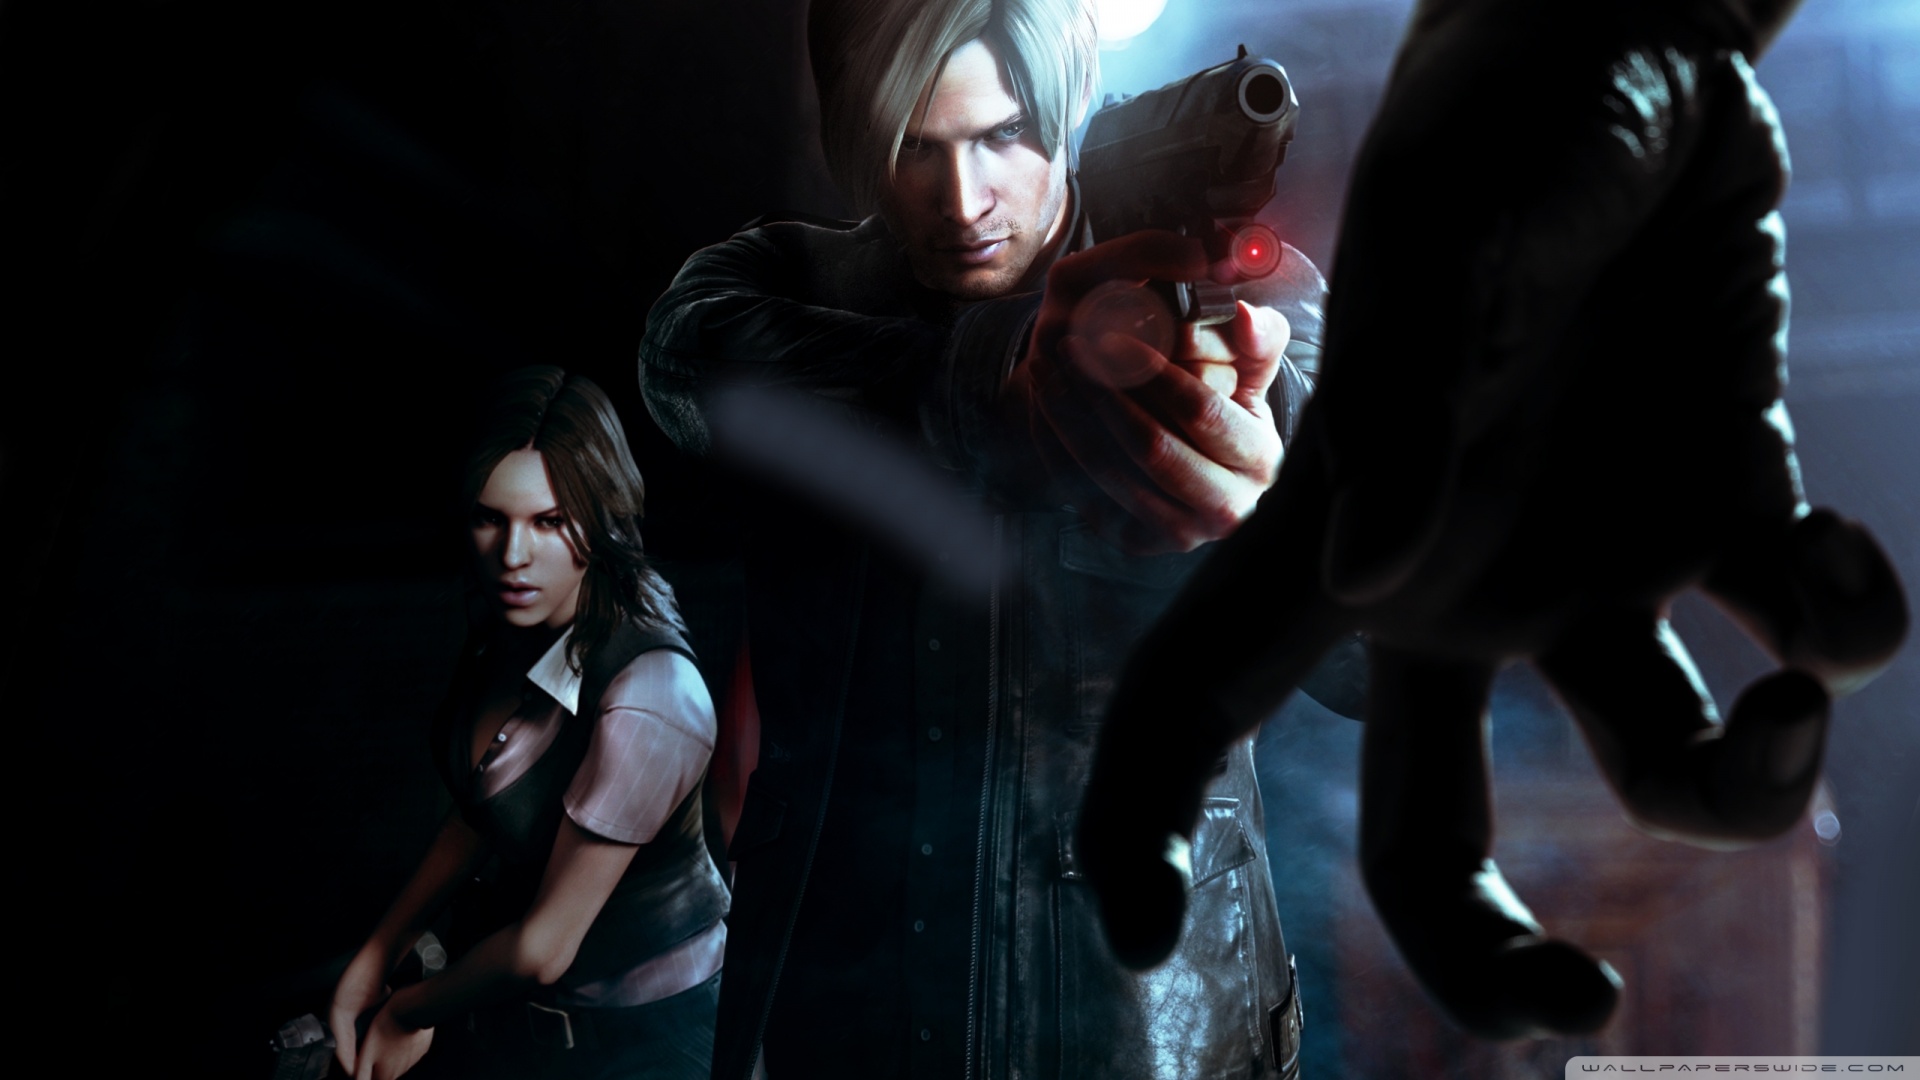 Resident Evil Game Video Wallpaper Image